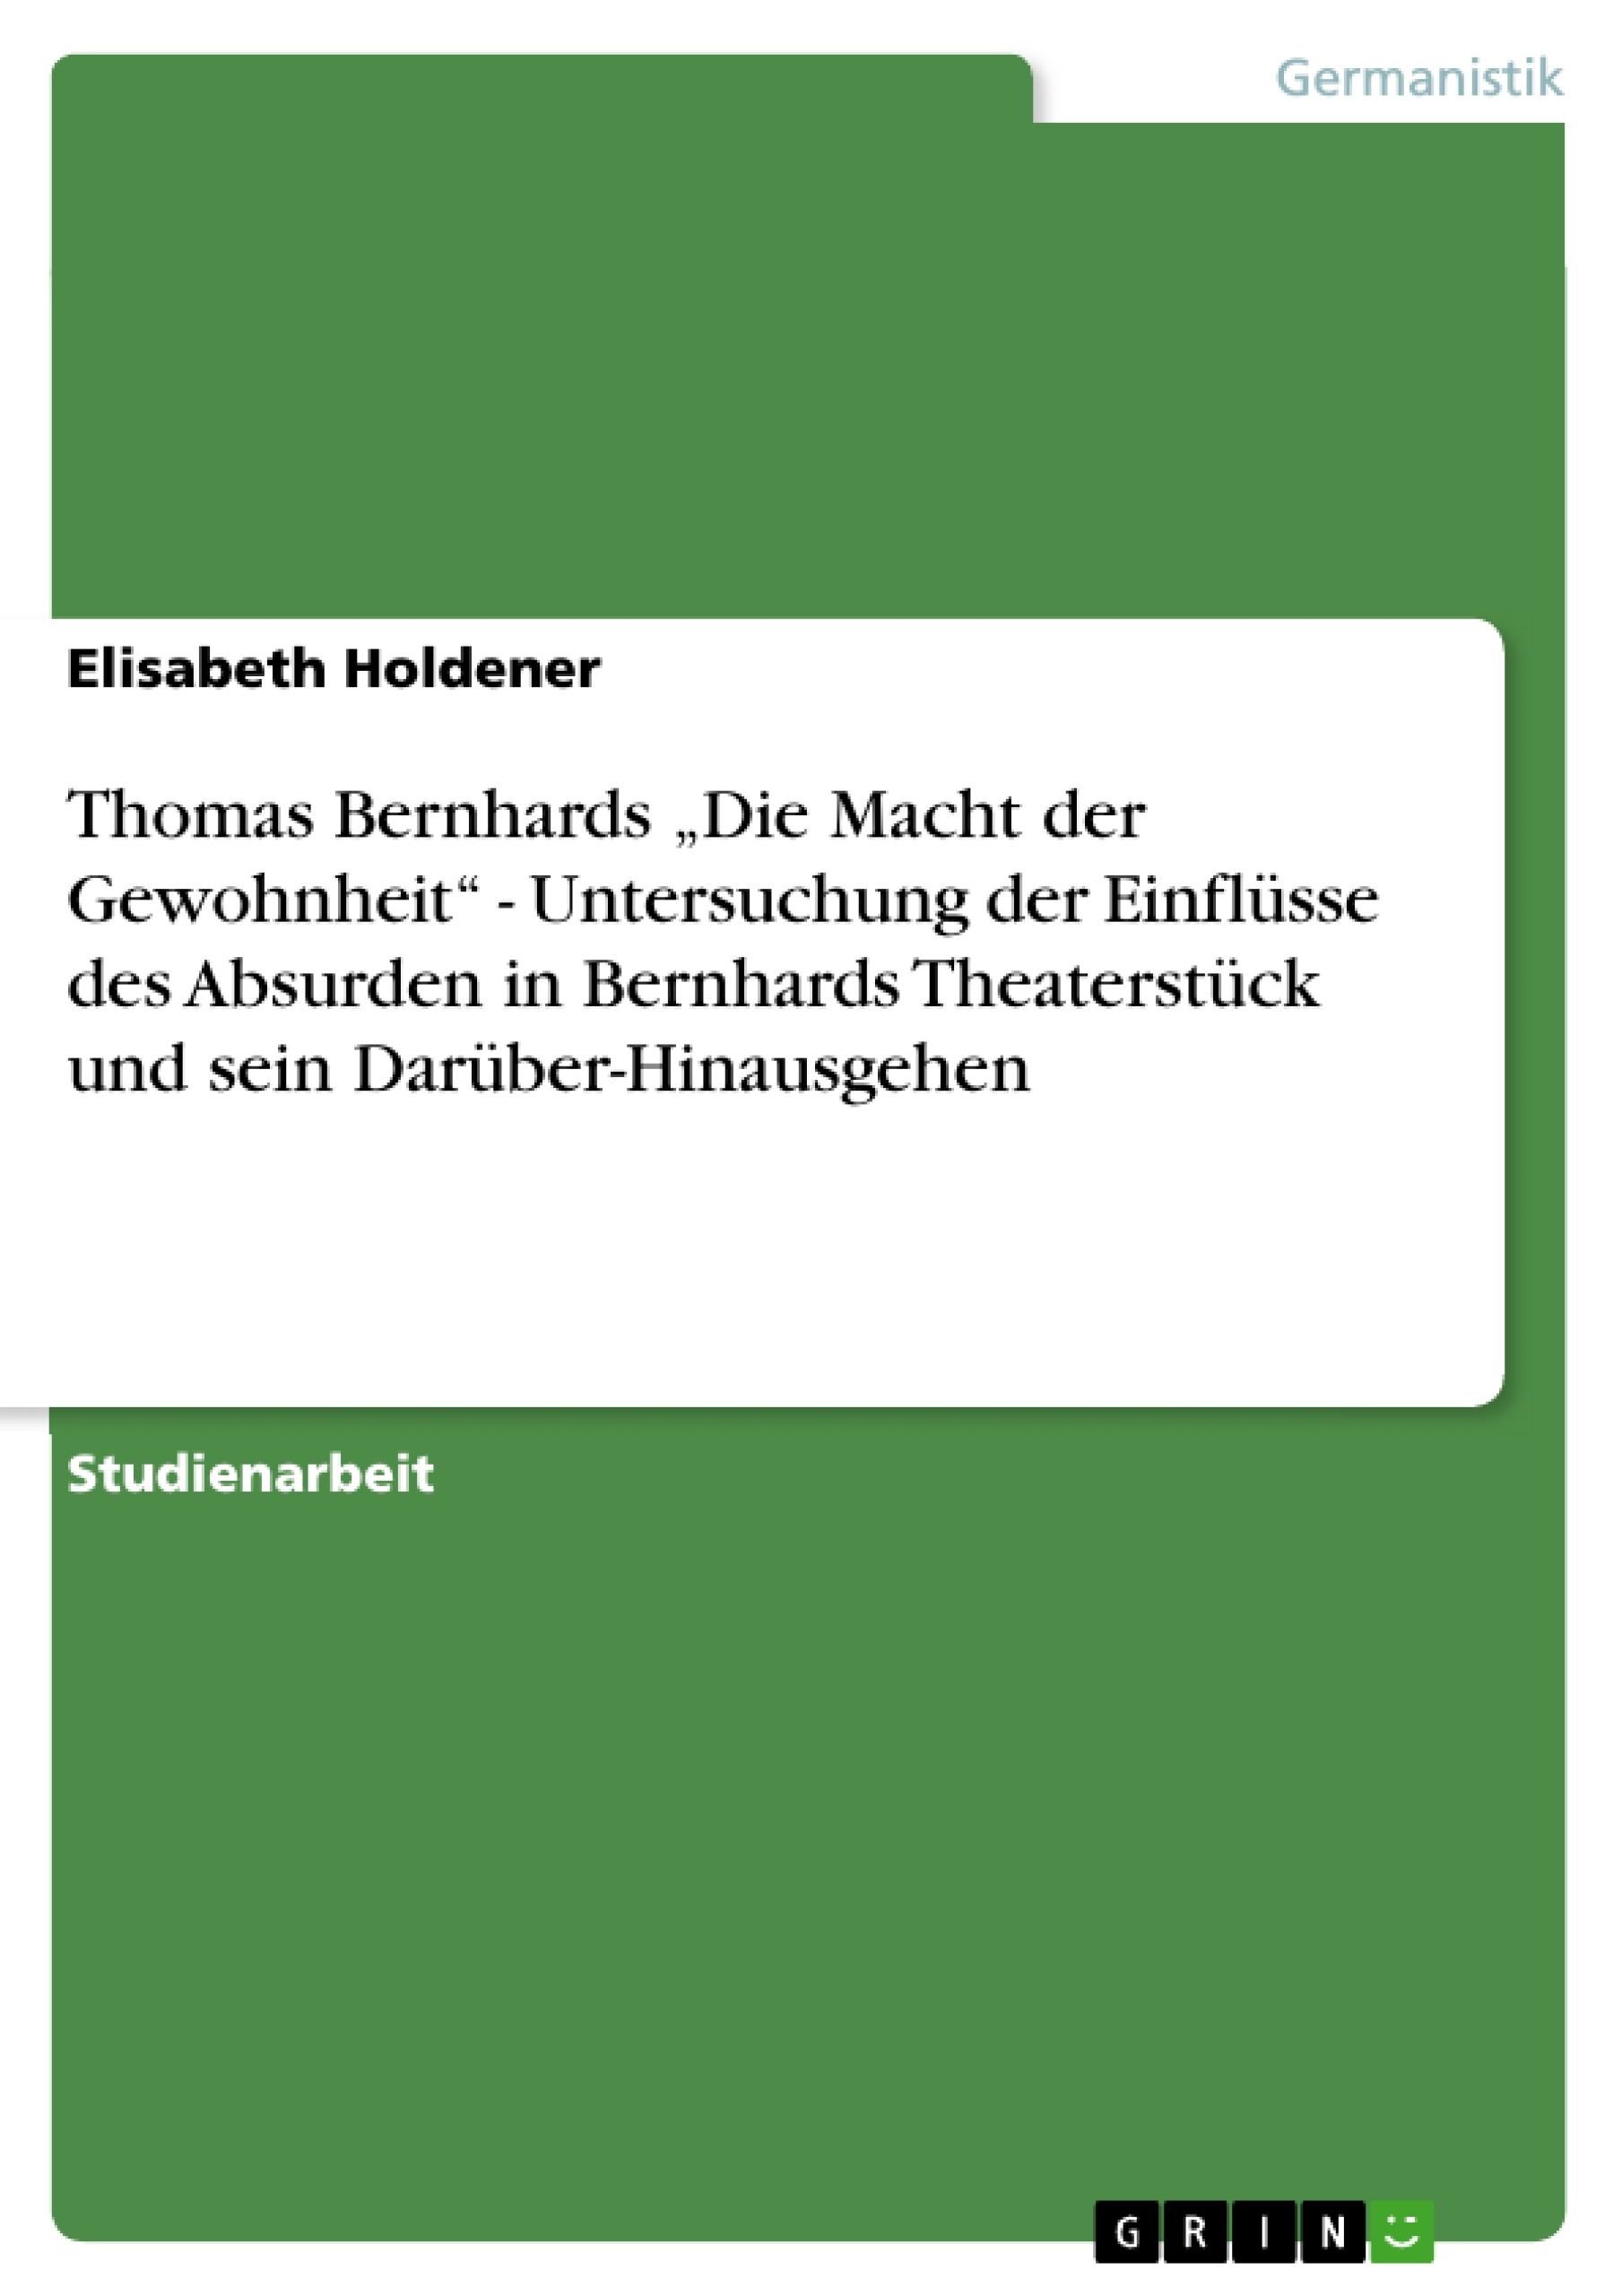 Title: Thomas Bernhards „Die Macht der Gewohnheit“ - Untersuchung der Einflüsse des Absurden in Bernhards Theaterstück und sein Darüber-Hinausgehen